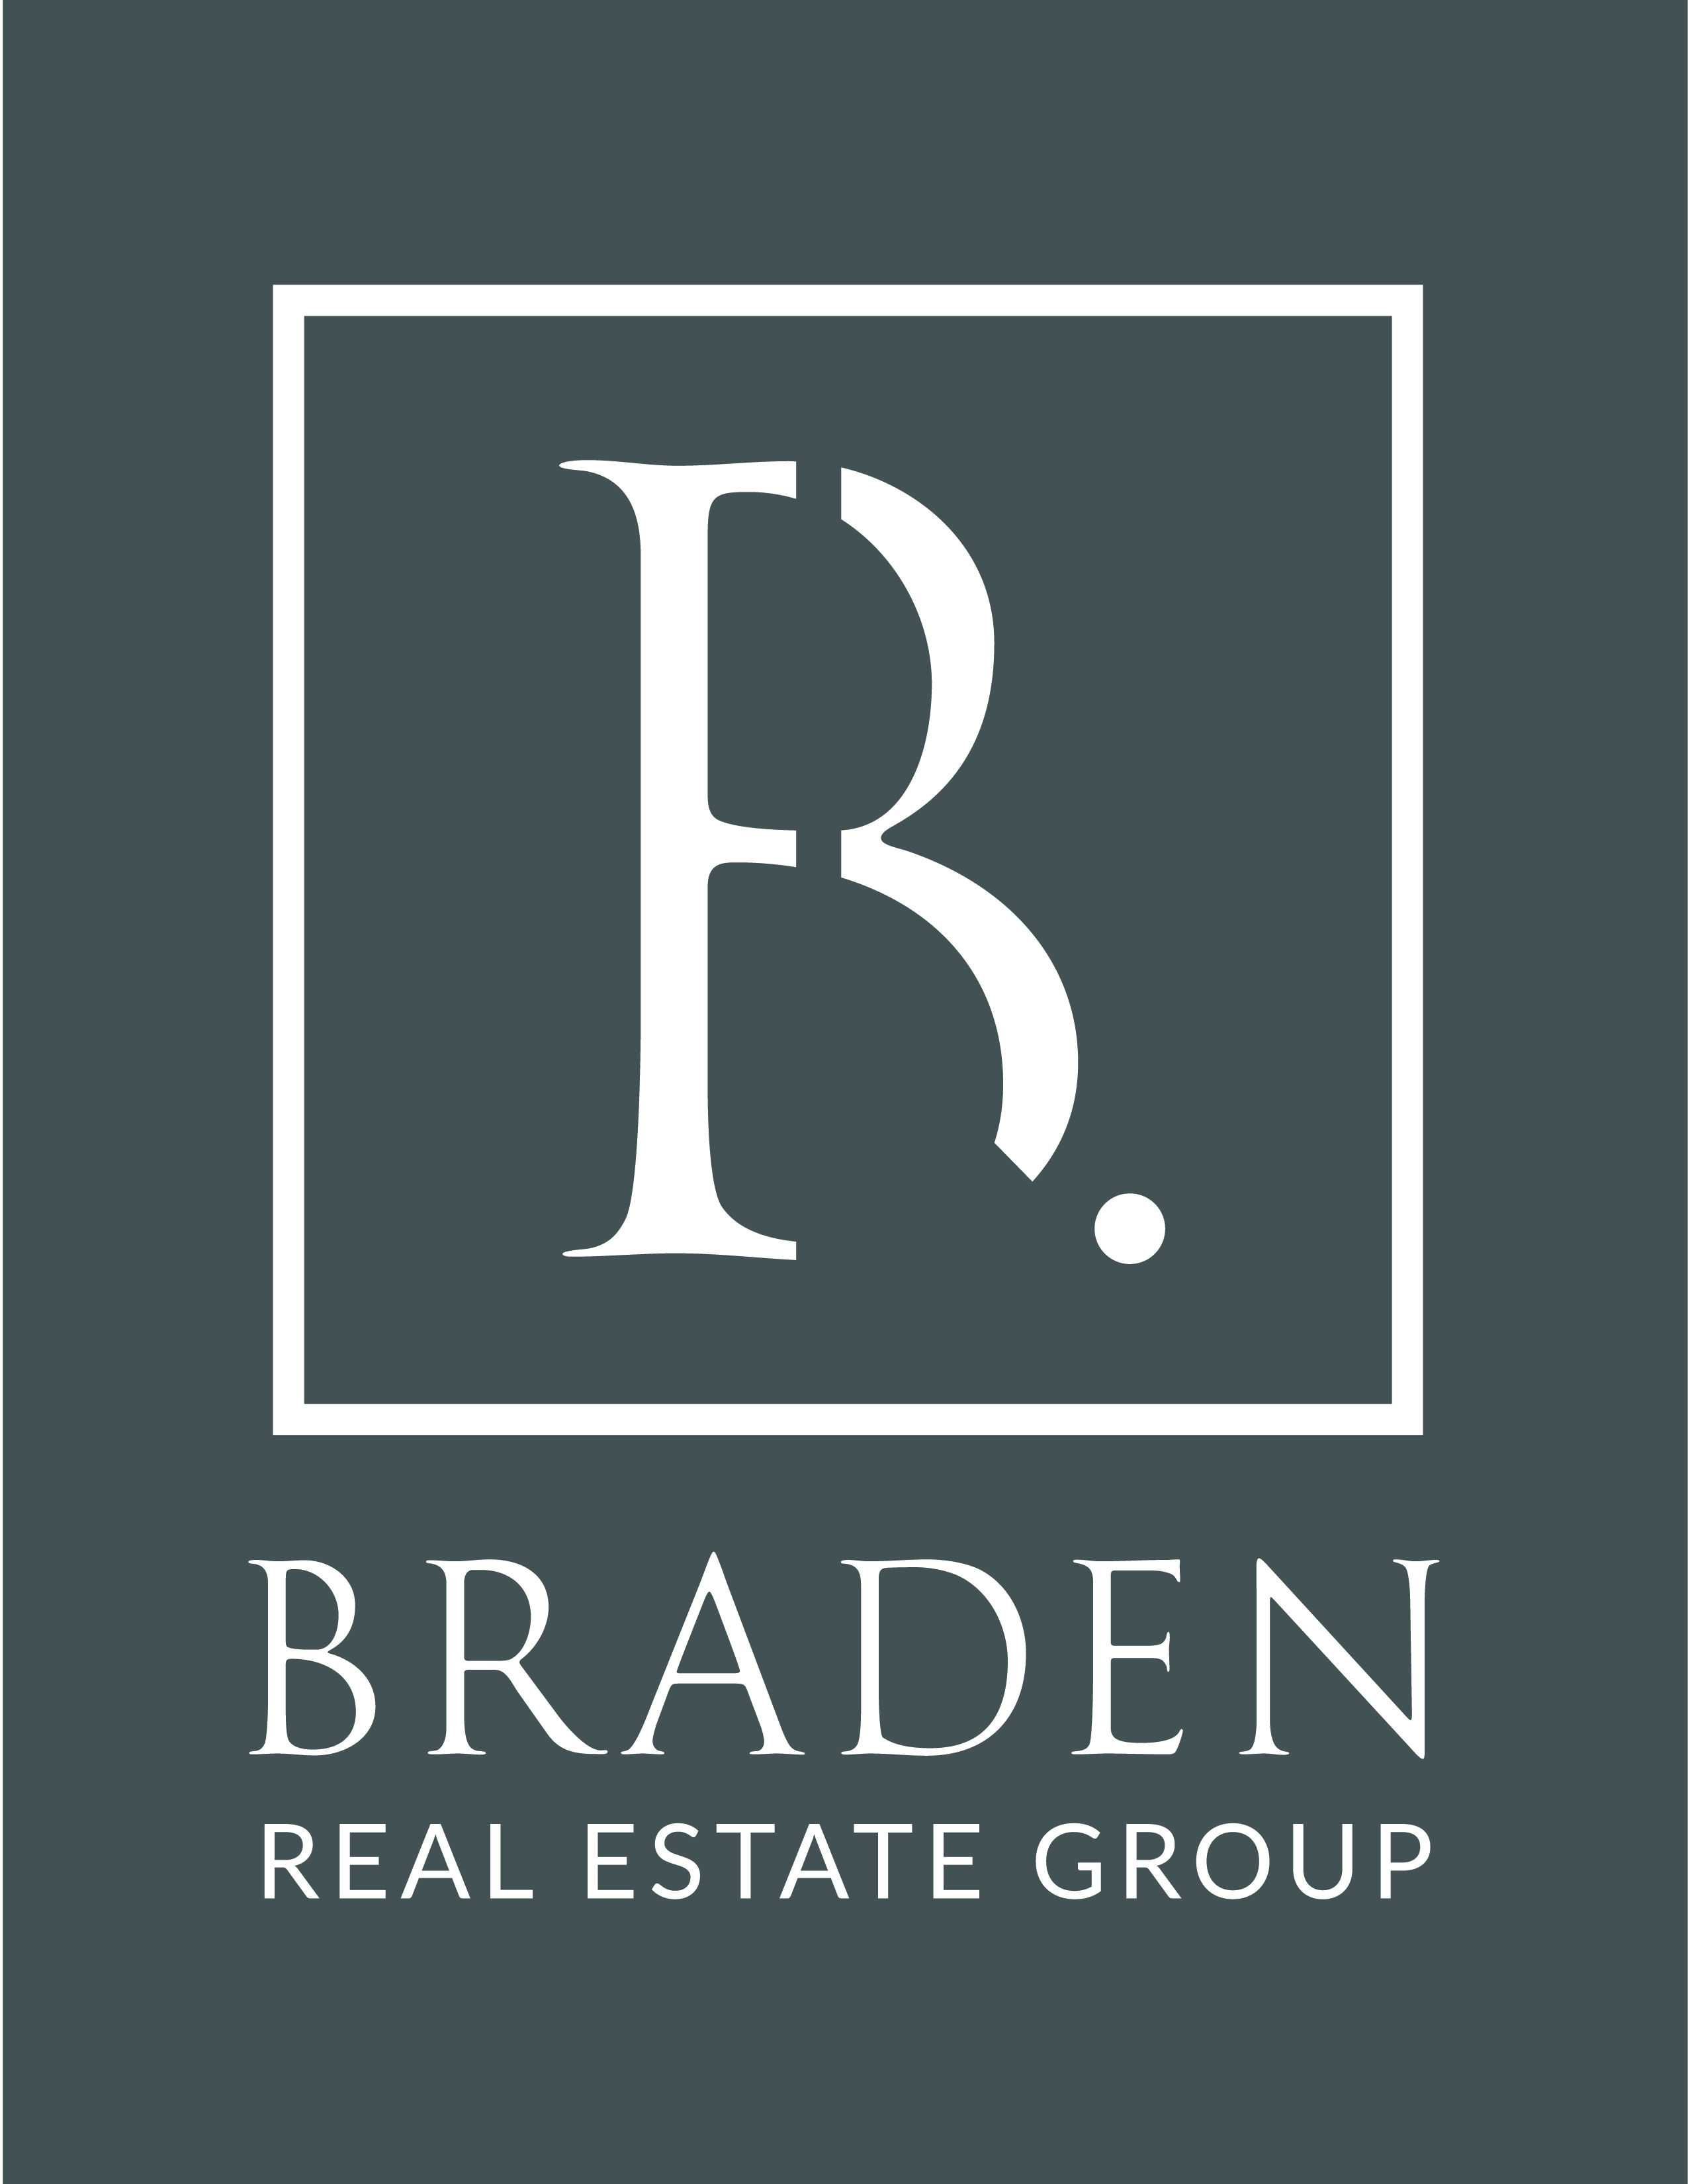 Braden Real Estate Group logo